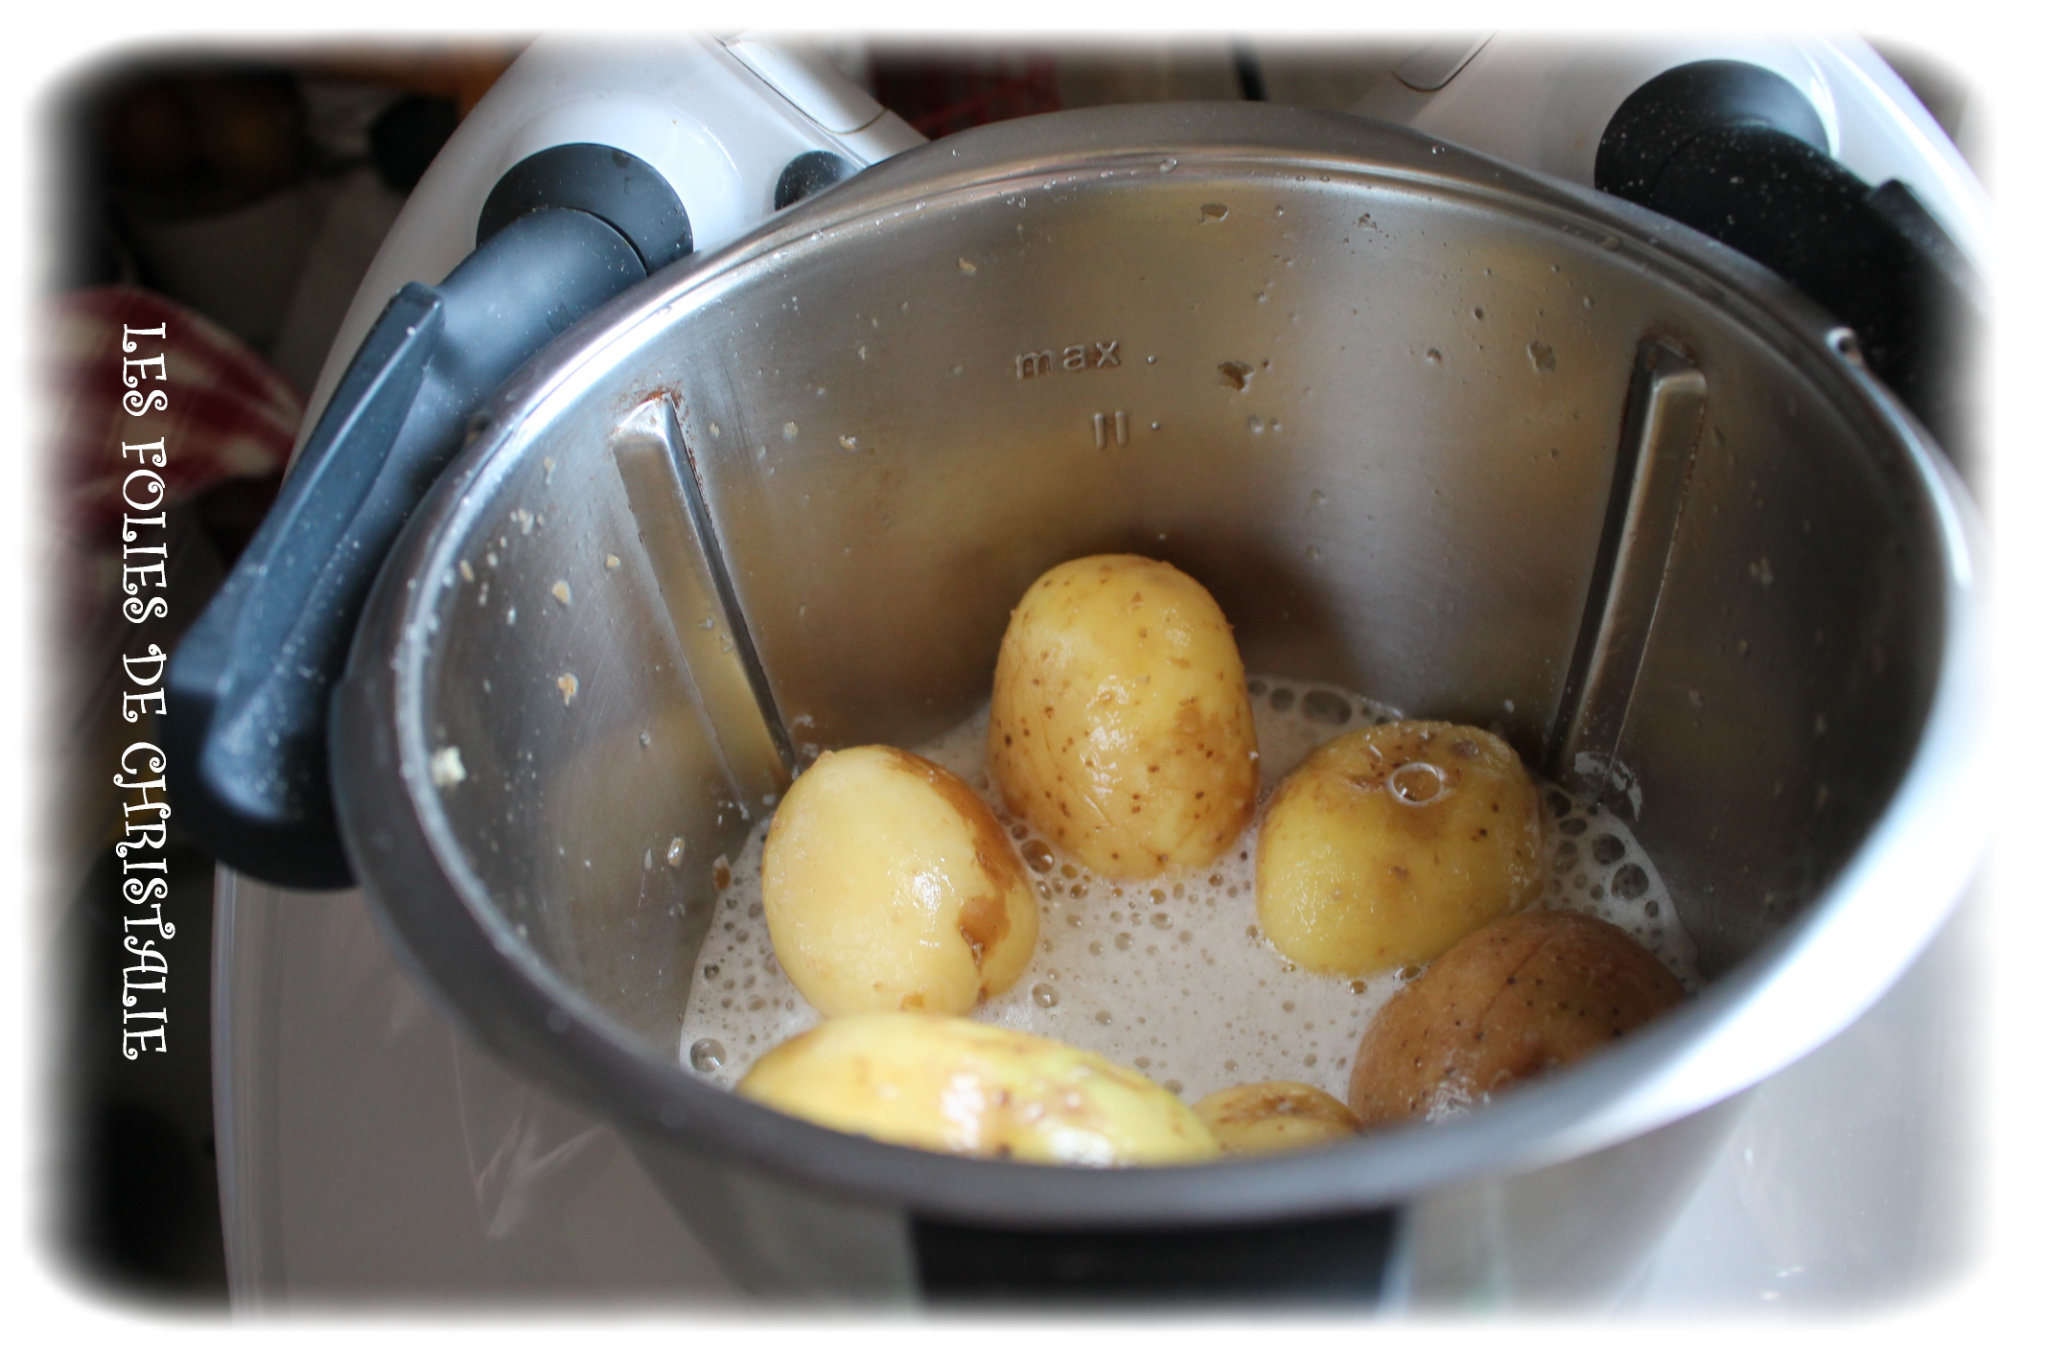 Couvre-lame éplucheur, Beaucoup d'entre nous en rêvaient Vorwerk l'a fait  🤩 Fini la corvée d'éplucher les pommes de terre, éplucher 800 grammes de  pommes de terre en seulement